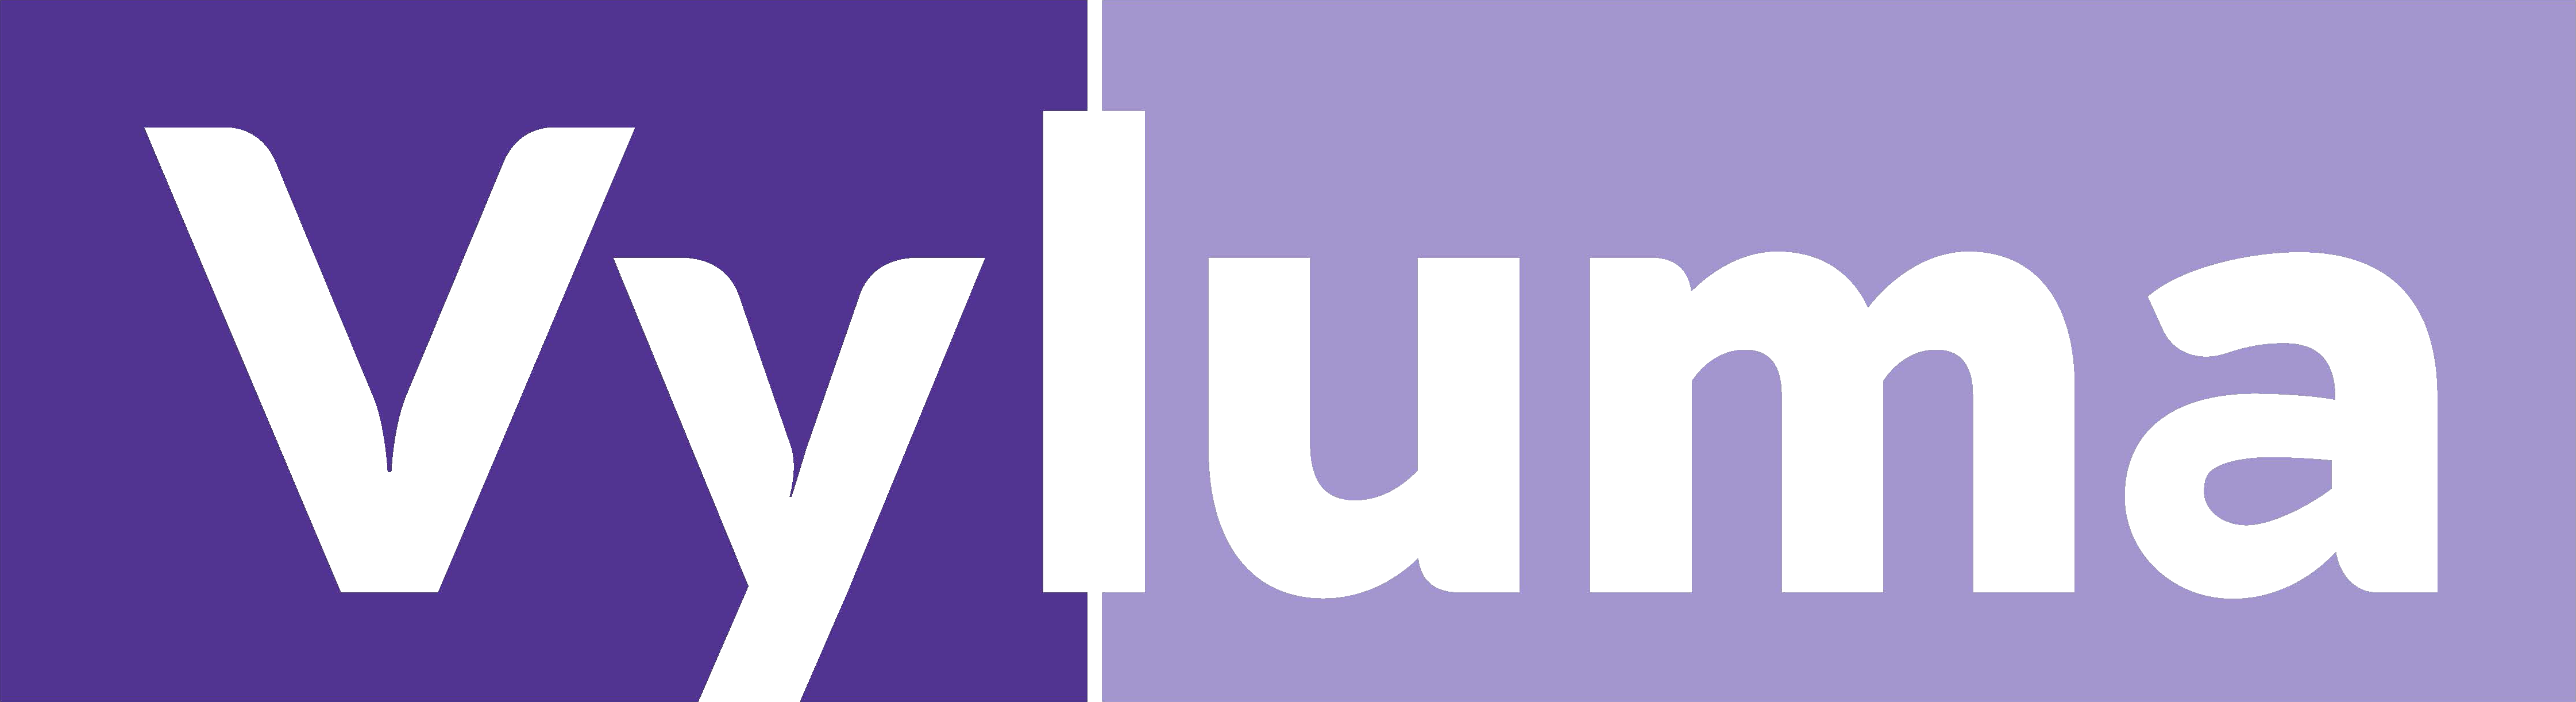 vyluma-logo-final.png